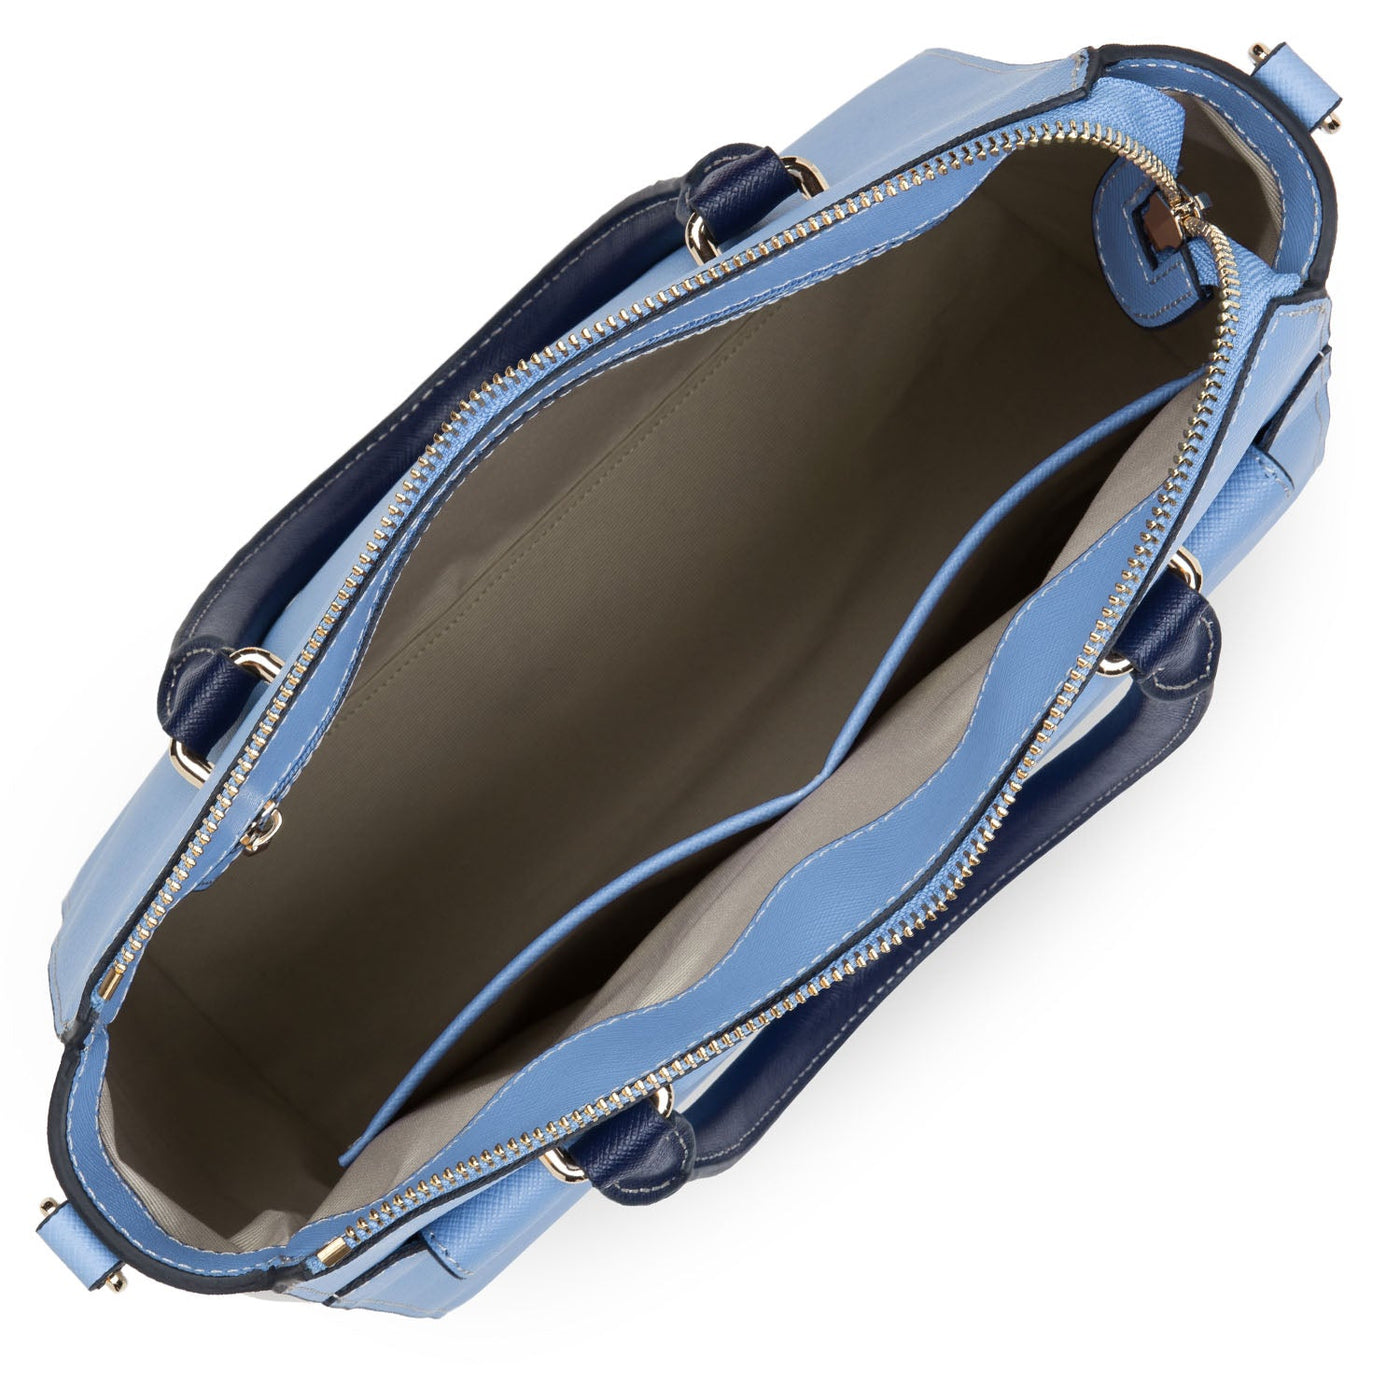 handbag - saffiano signature #couleur_bleu-ciel-gris-clair-bleu-fonce